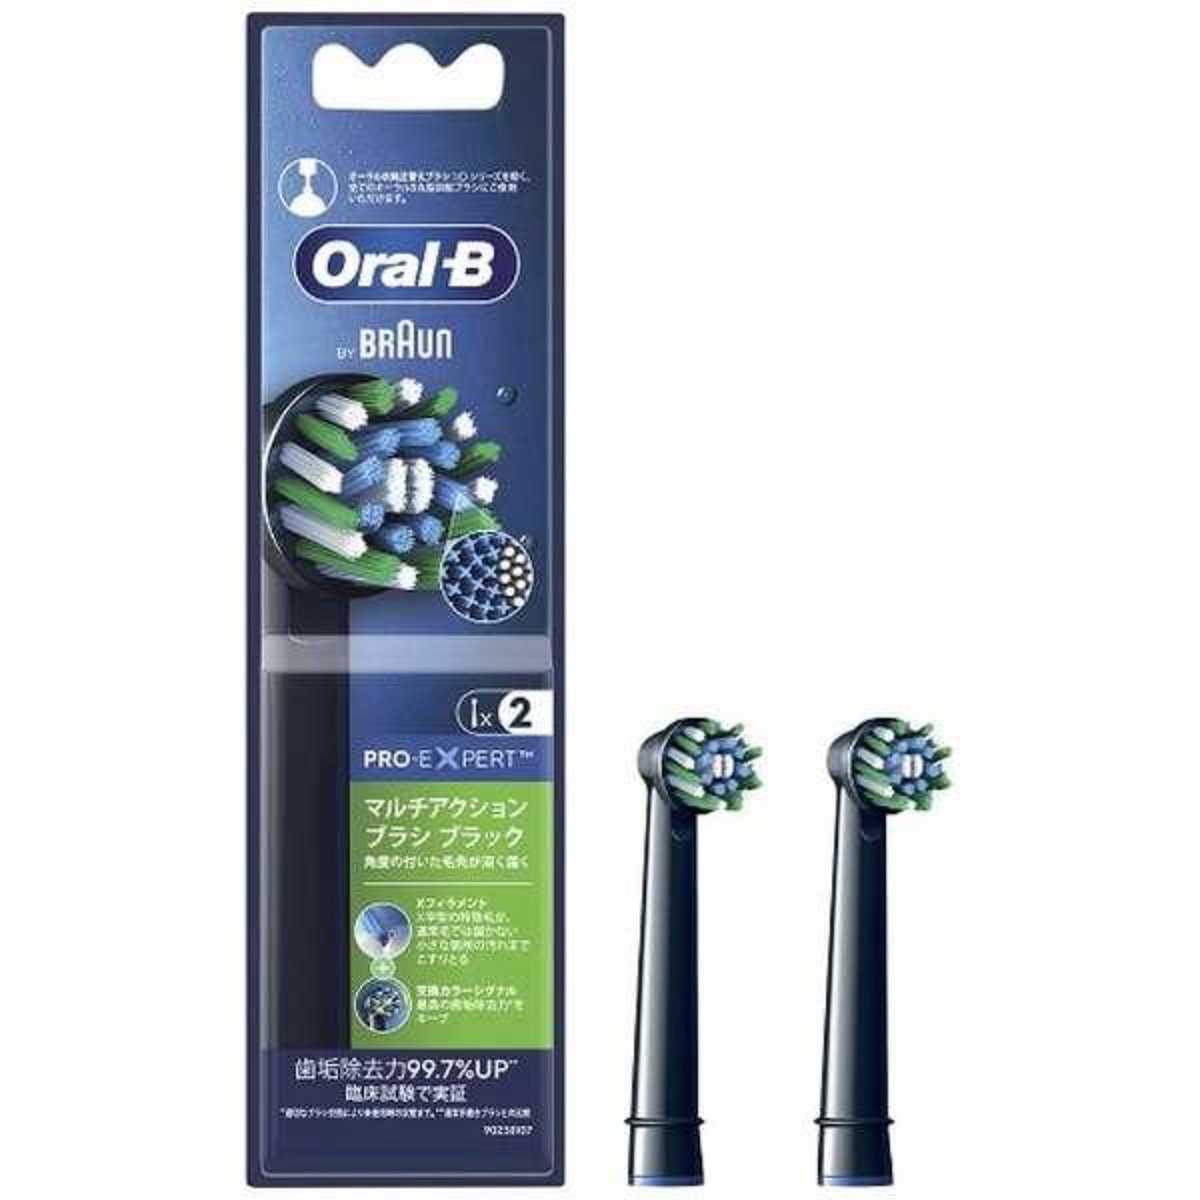 BRAUN オーラルB 電動歯ブラシ 替えブラシ 交換カラーシグナル付き マルチアクションブラシ 2本入り